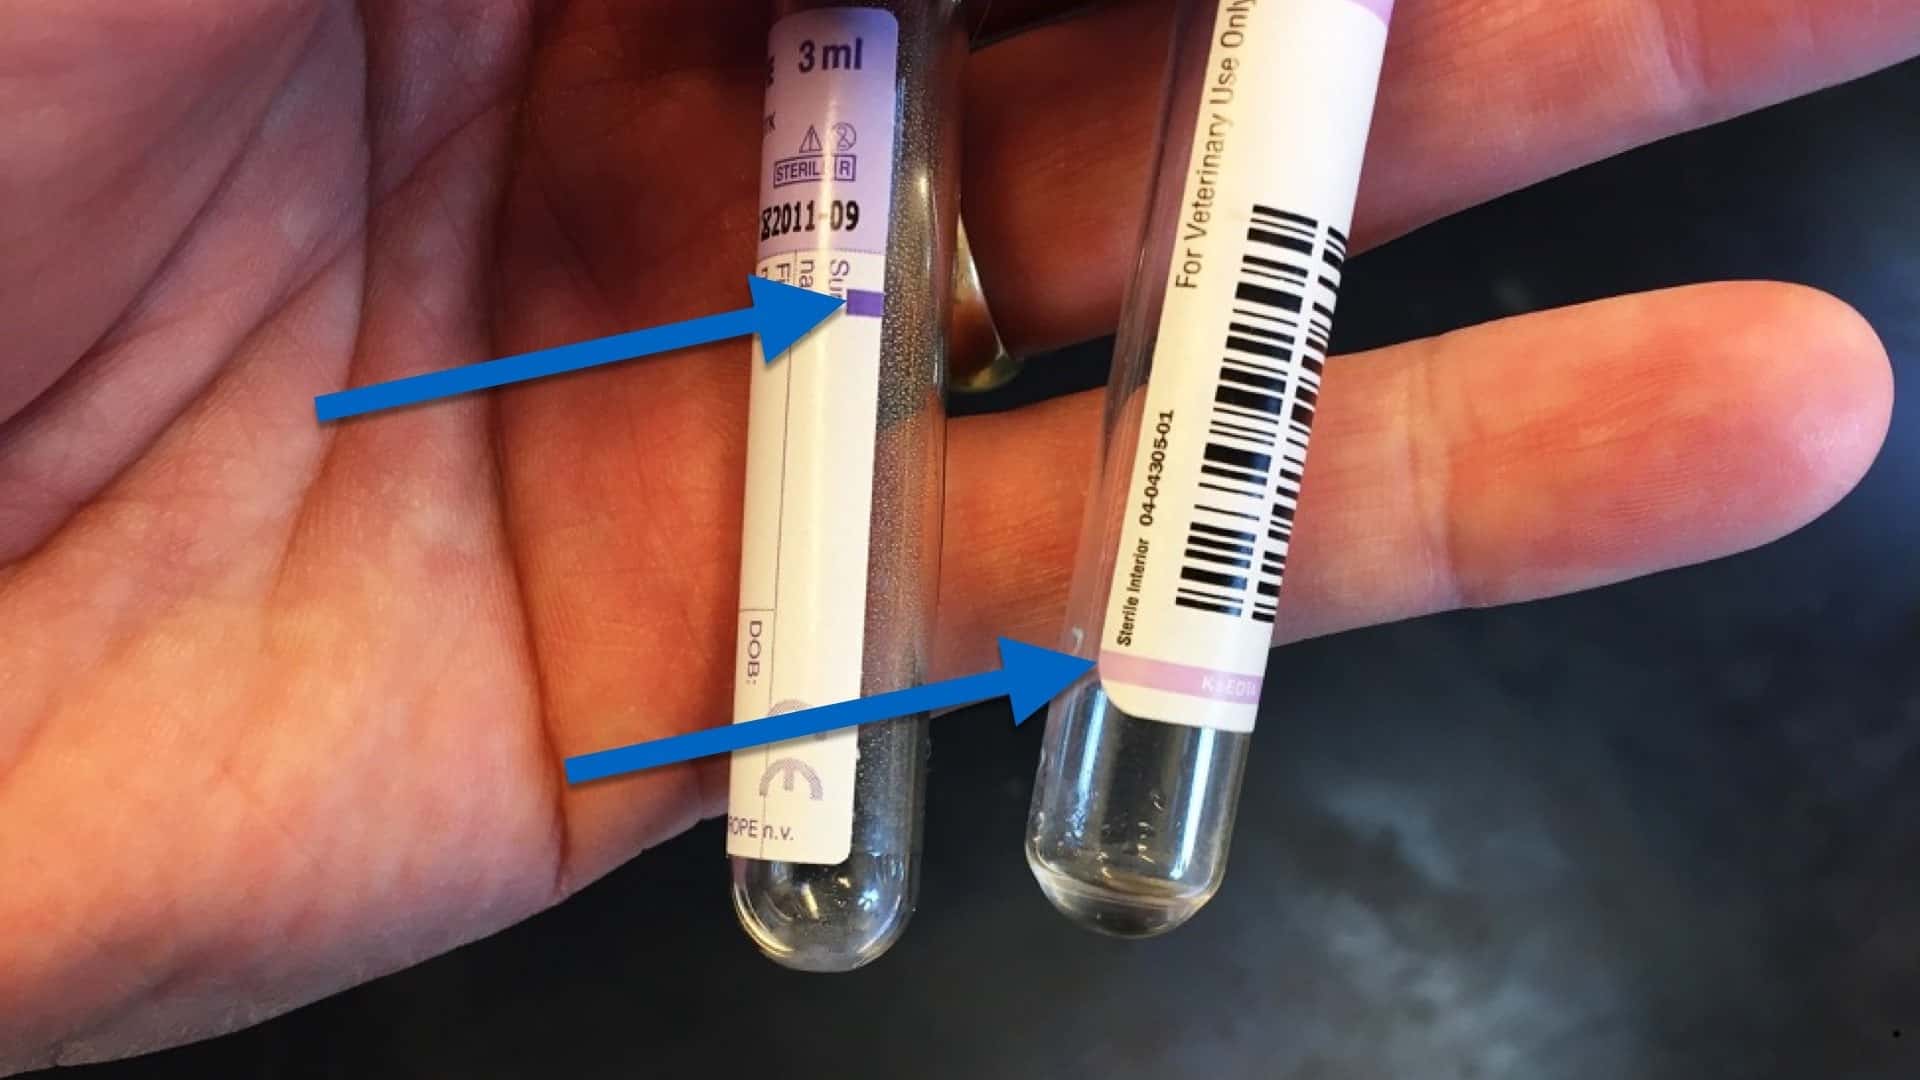 EDTA blodprøve glas med forskellig markering